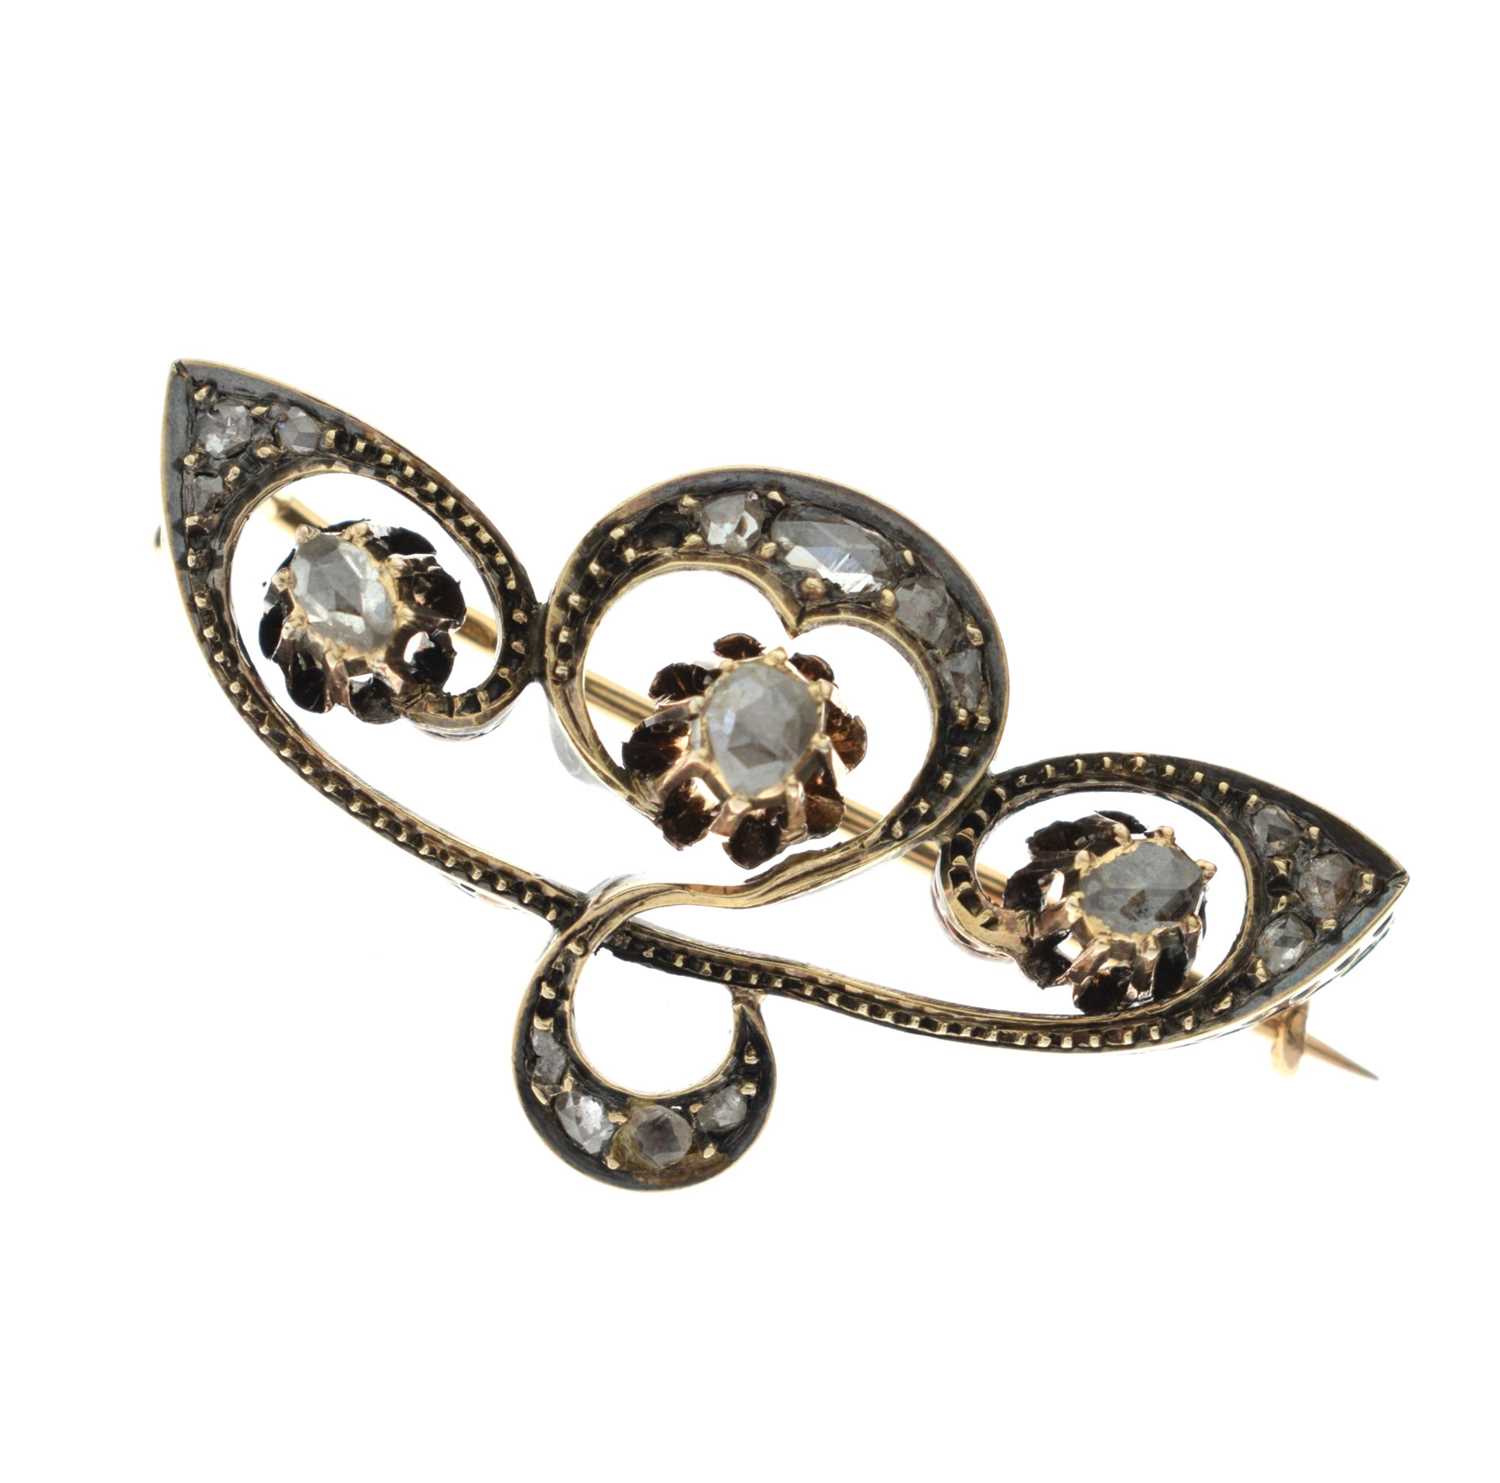 Late 19th century Art Nouveau rose cut diamond brooch